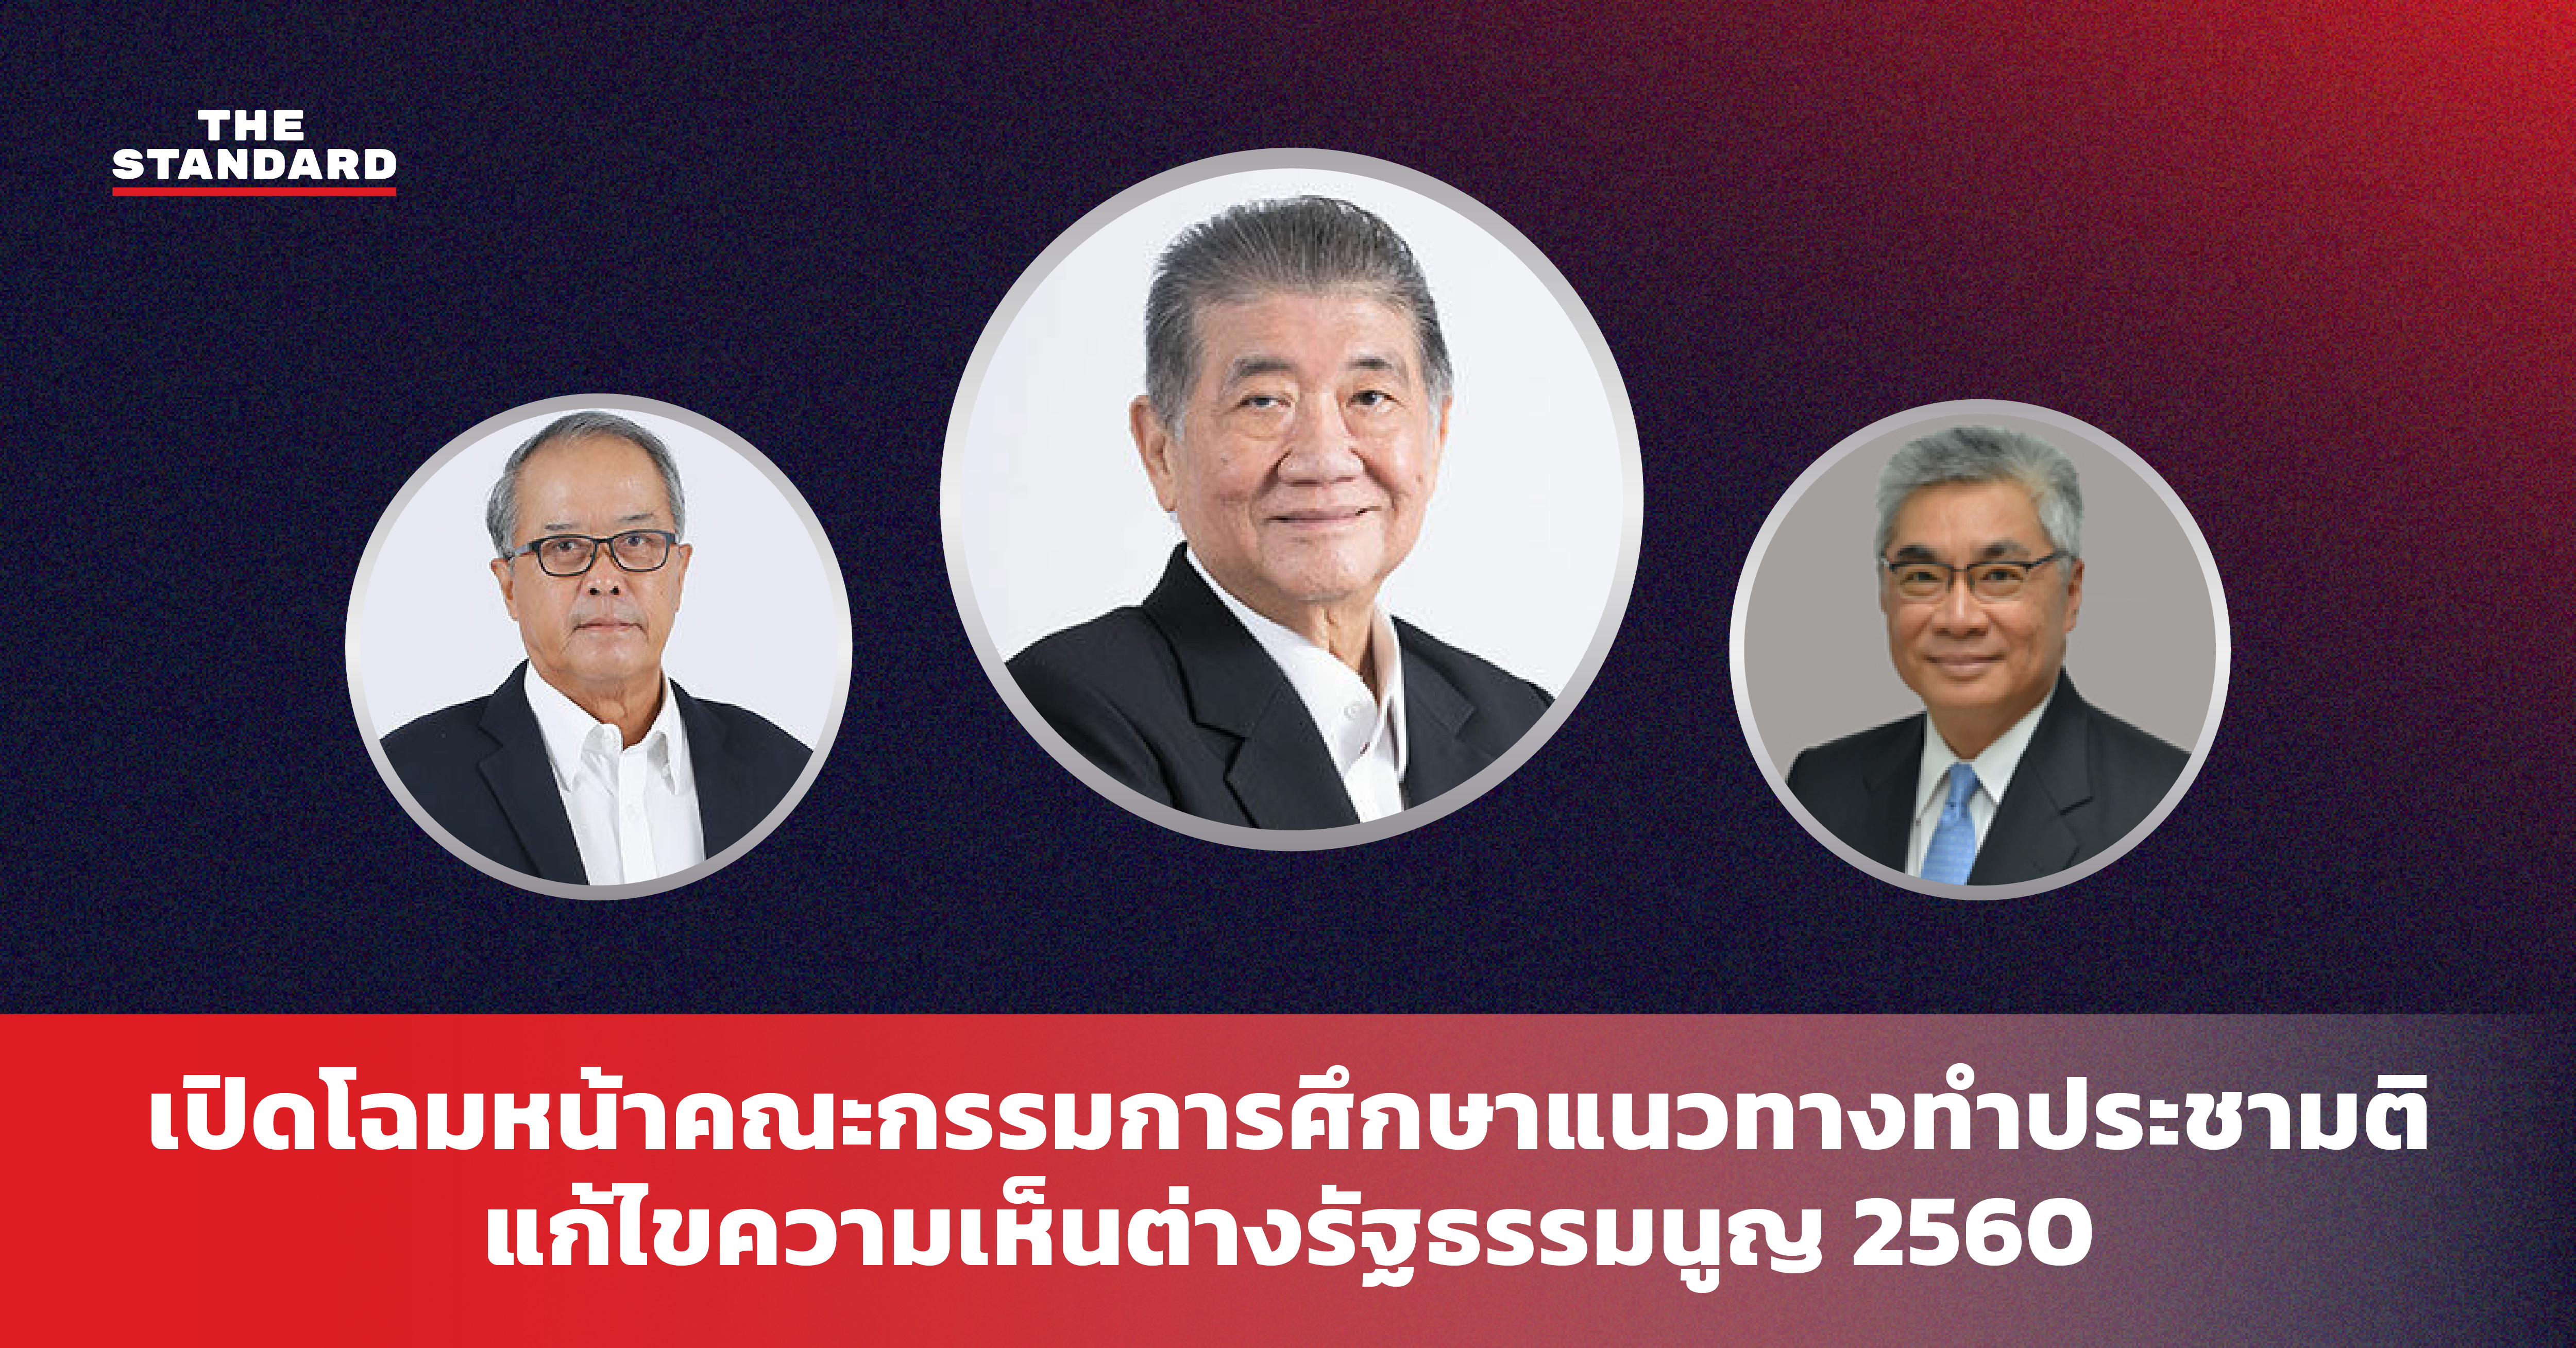 คณะกรรมการเพื่อพิจารณาศึกษาแนวทางในการทำประชามติ เพื่อแก้ไขปัญหาความเห็นที่แตกต่างในเรื่องรัฐธรรมนูญแห่งราชอาณาจักรไทย พุทธศักราช 2560